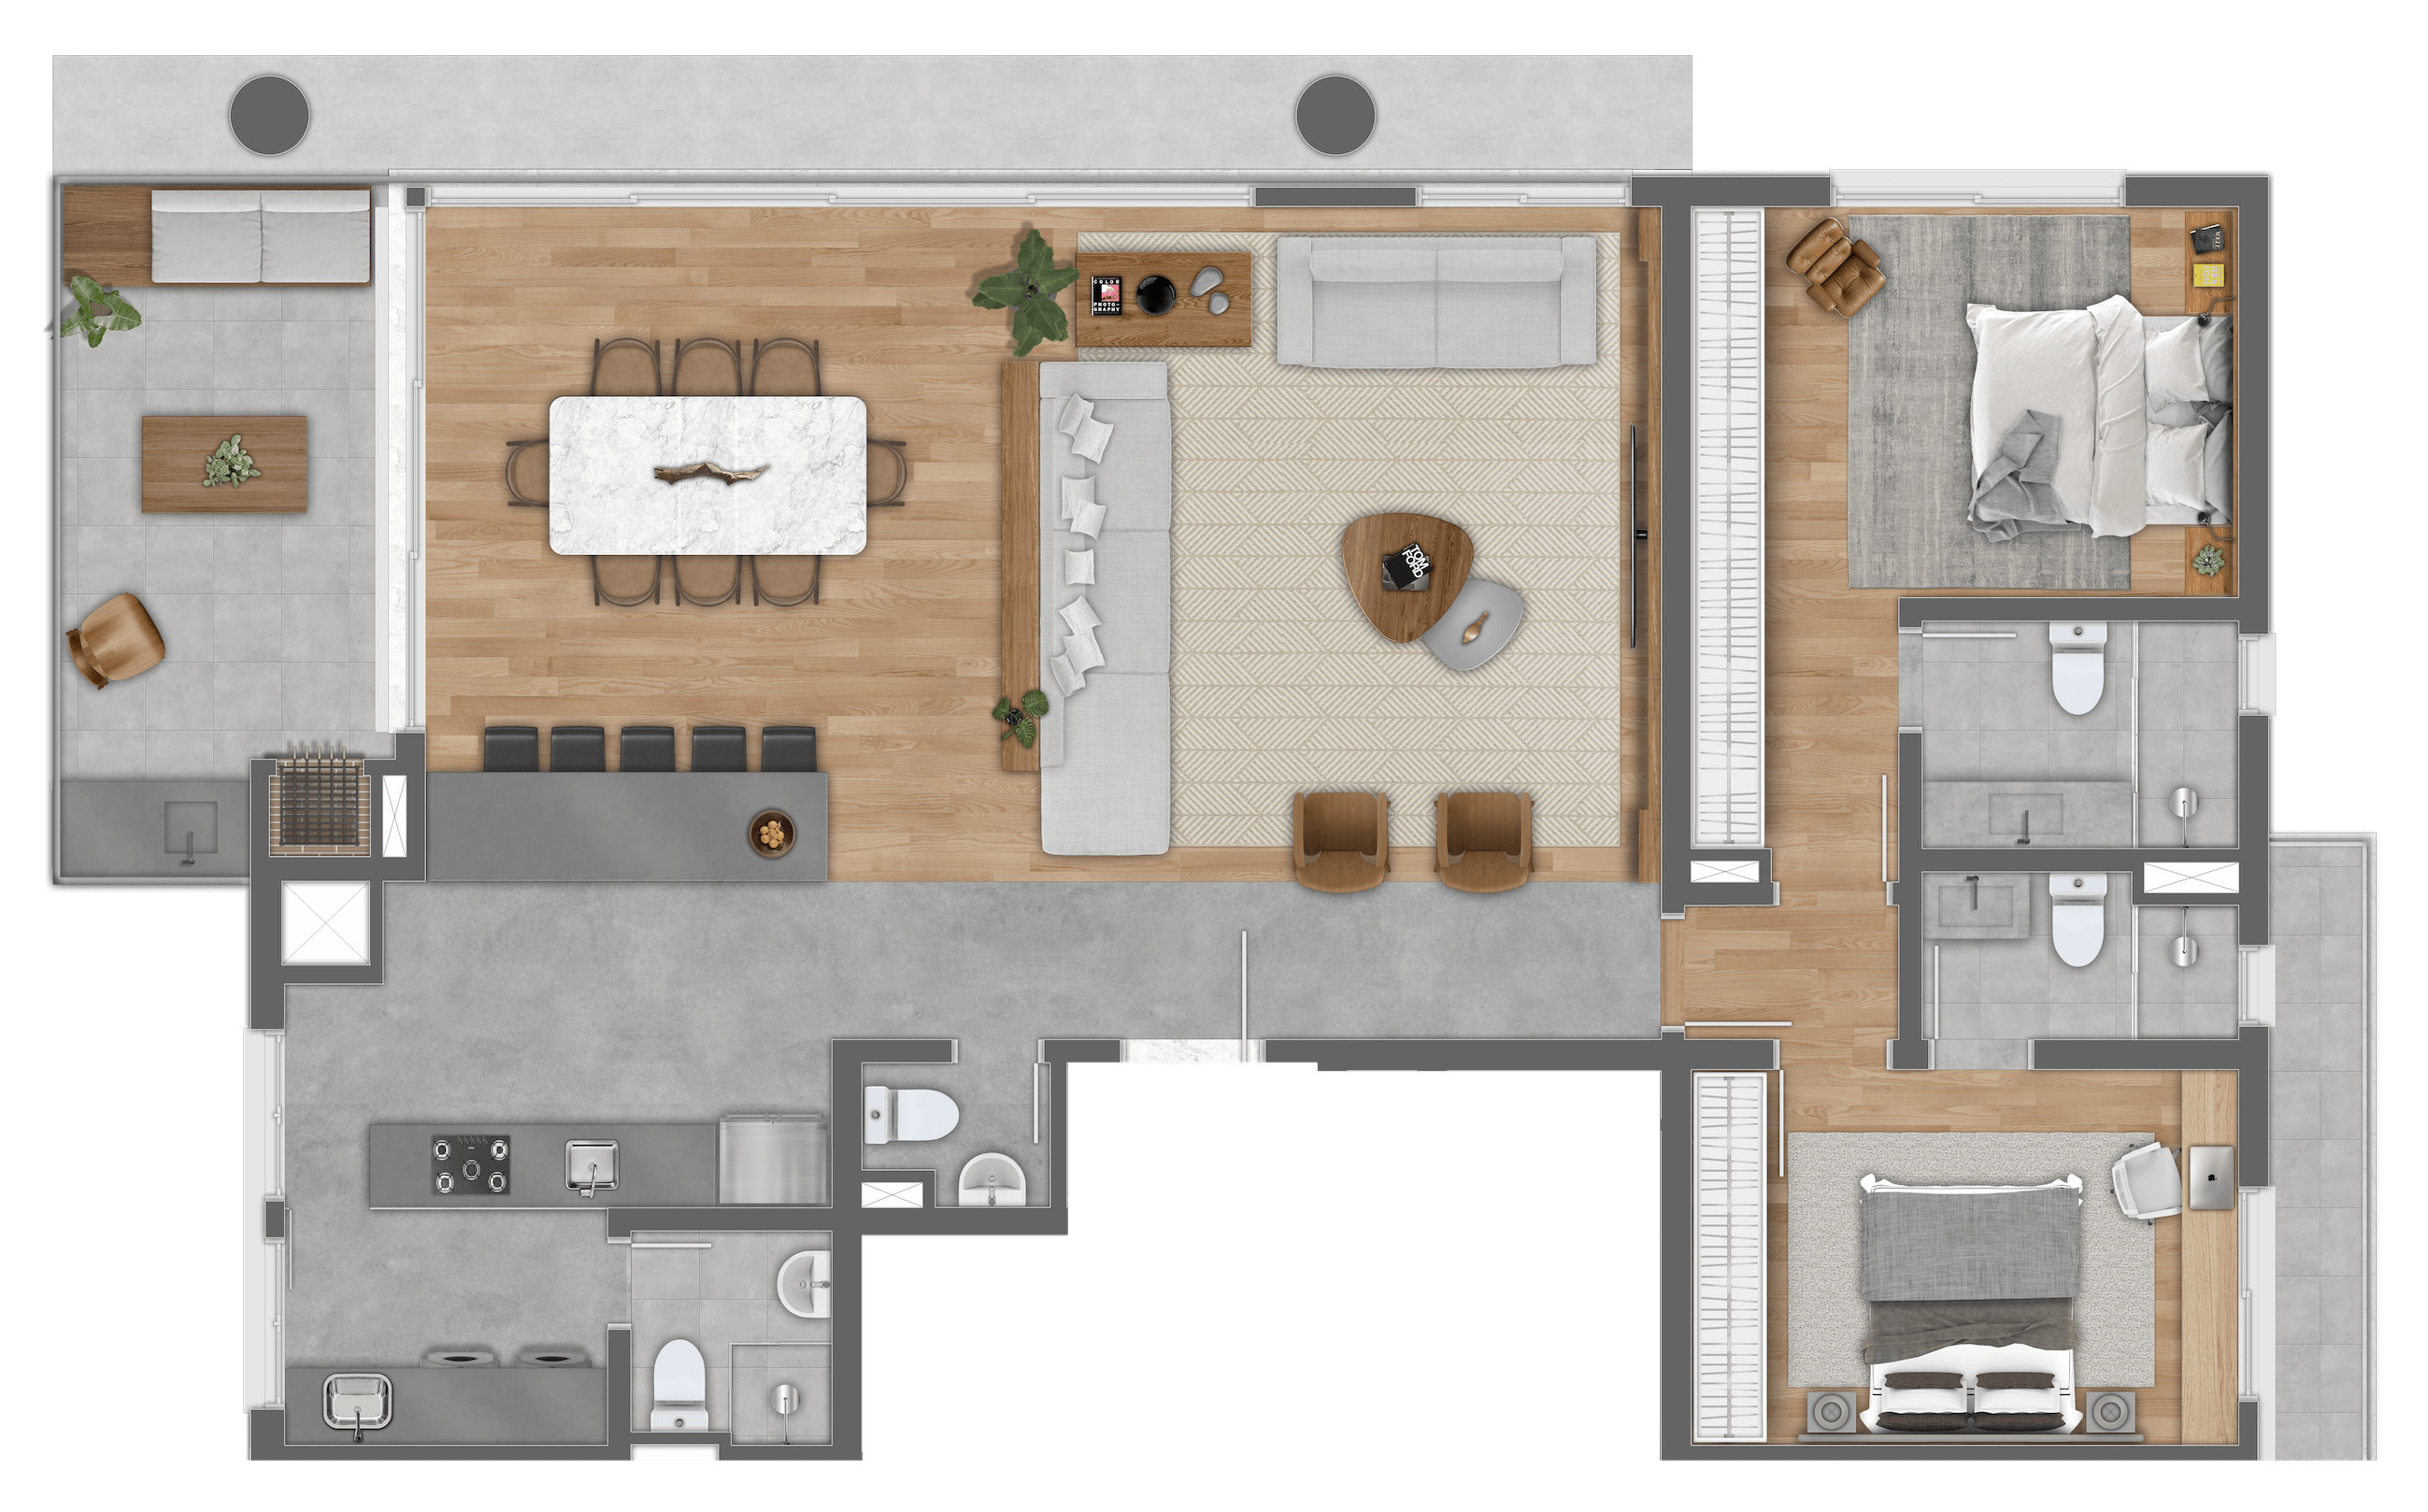 Faria Santos - Apartamento com living estendido - 2 suites - 136m²